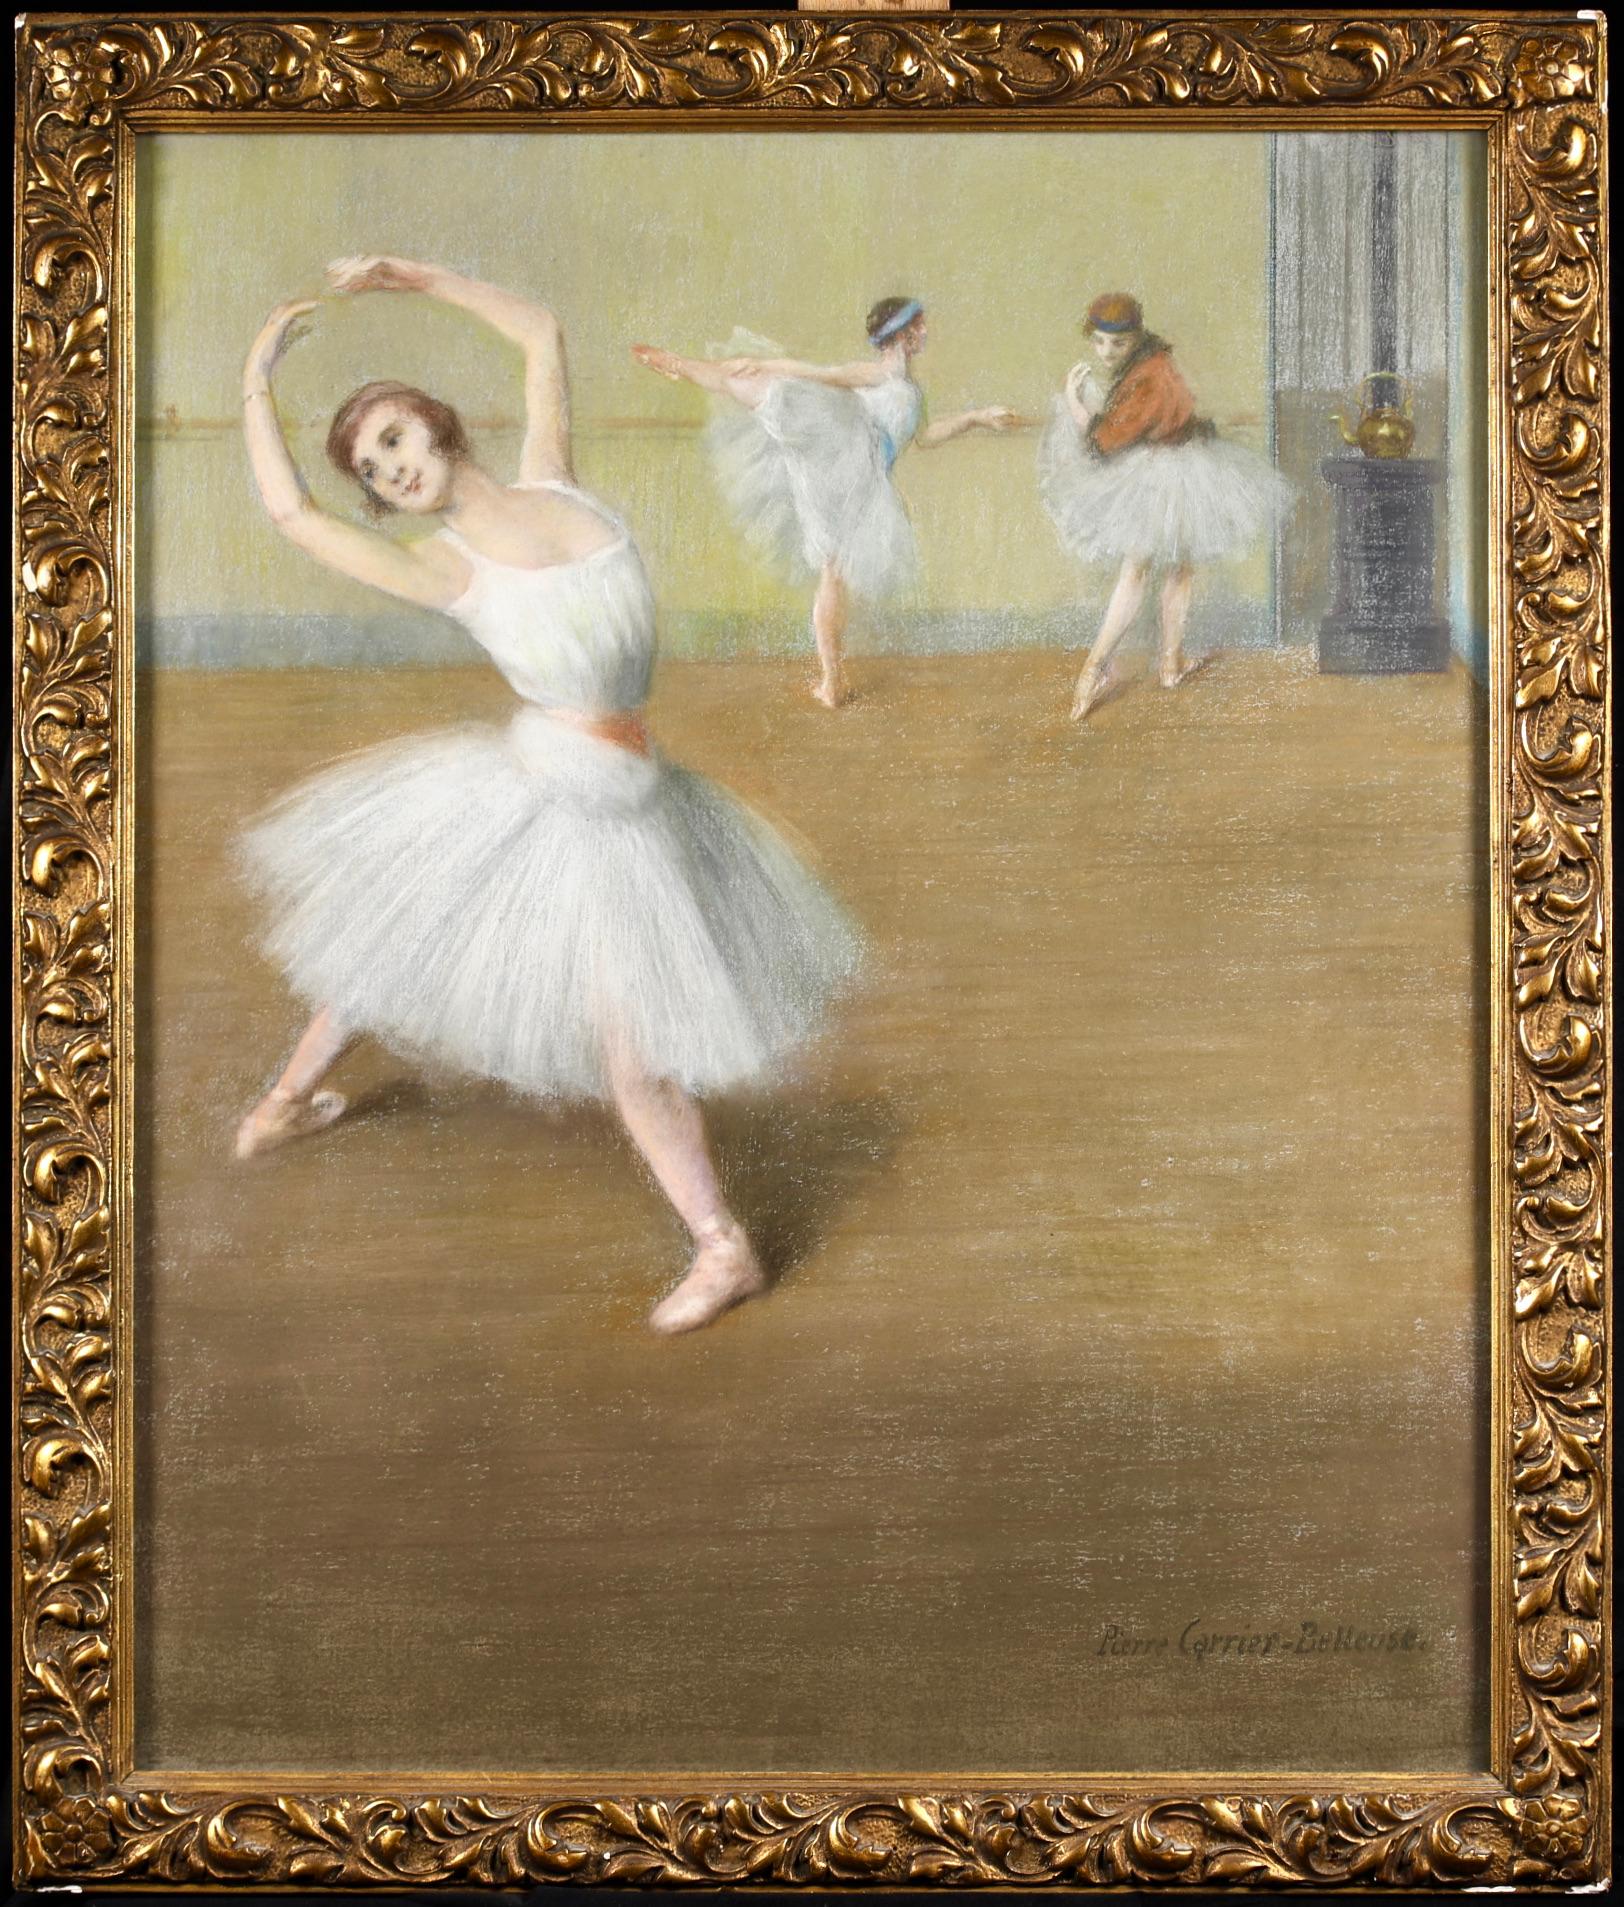 Danseuses a la barre – Impressionistisches figuratives Pastell – Pierre Carrier-Belleuse, Danseuses